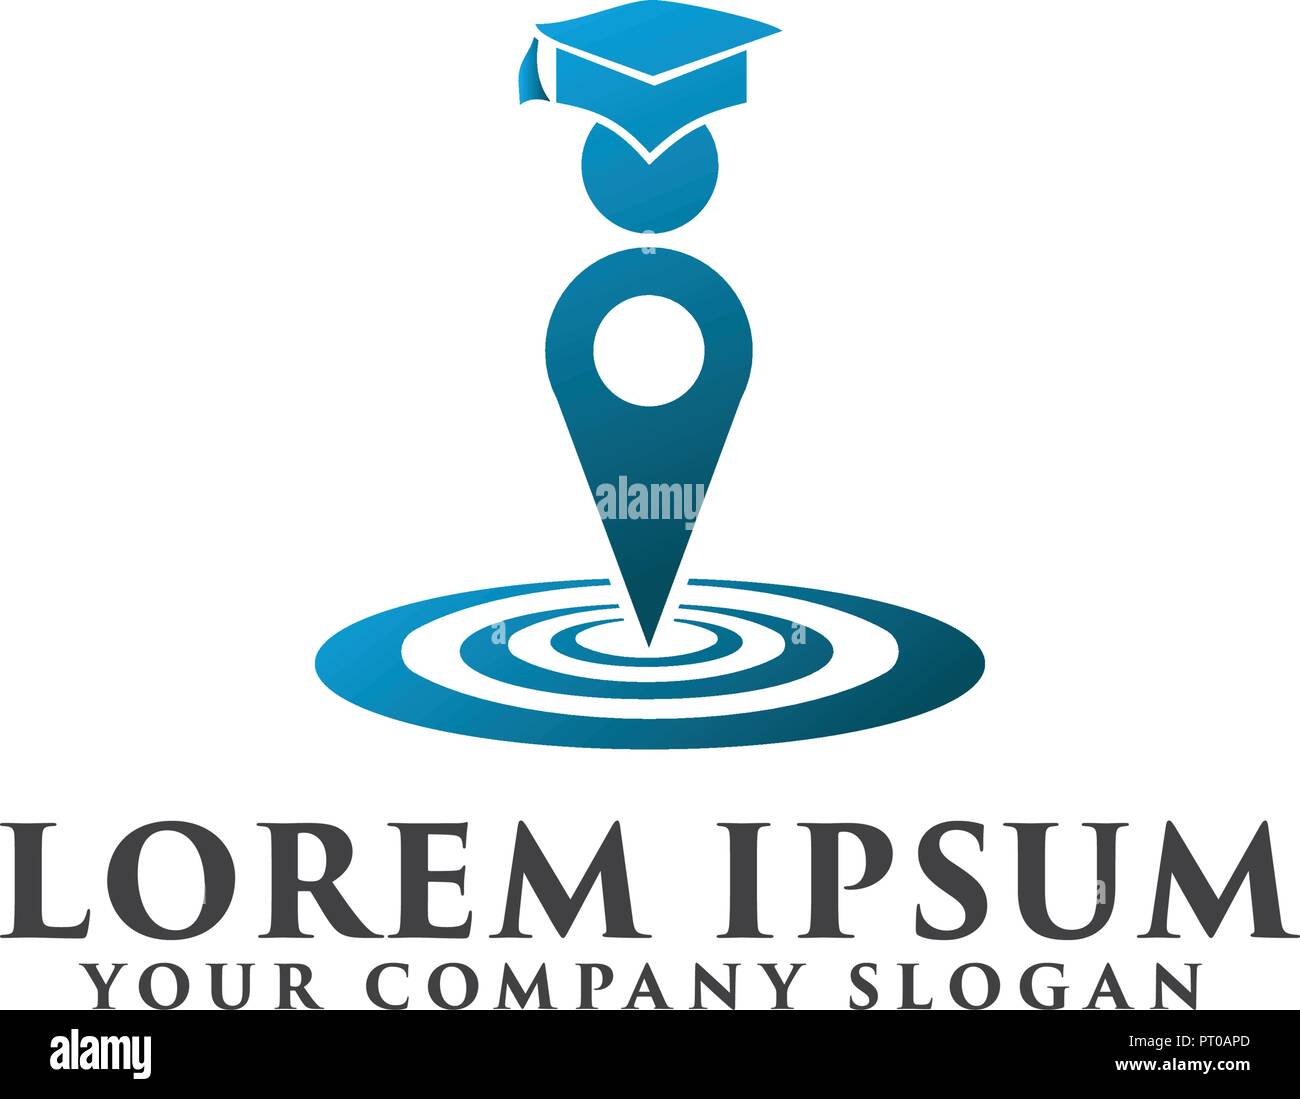 Education logo. School logo design concept template Stock Vector